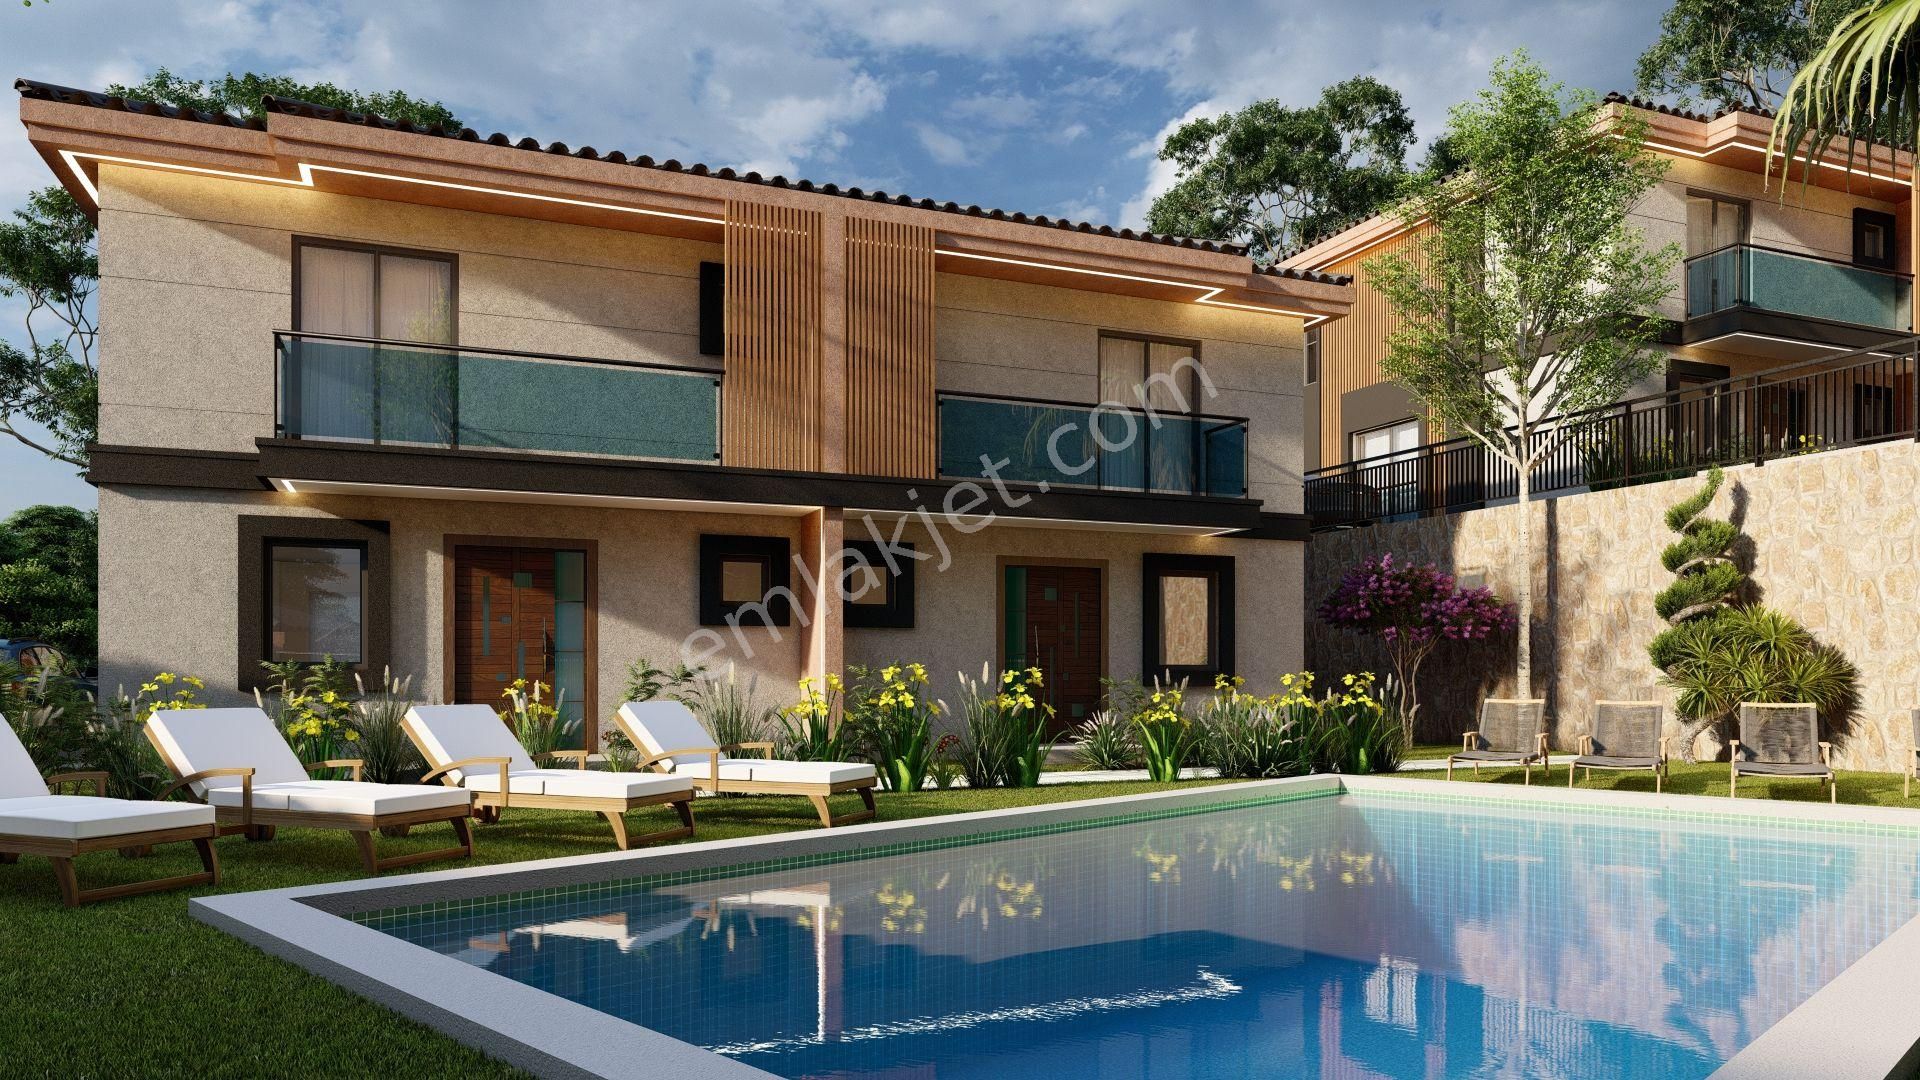 Milas Beçin Satılık Villa SAHİBİNDEN MİLAS BODRUM HAVALİMANINA 10 DK PANORAMİK  MANZARALI VİLLALAR